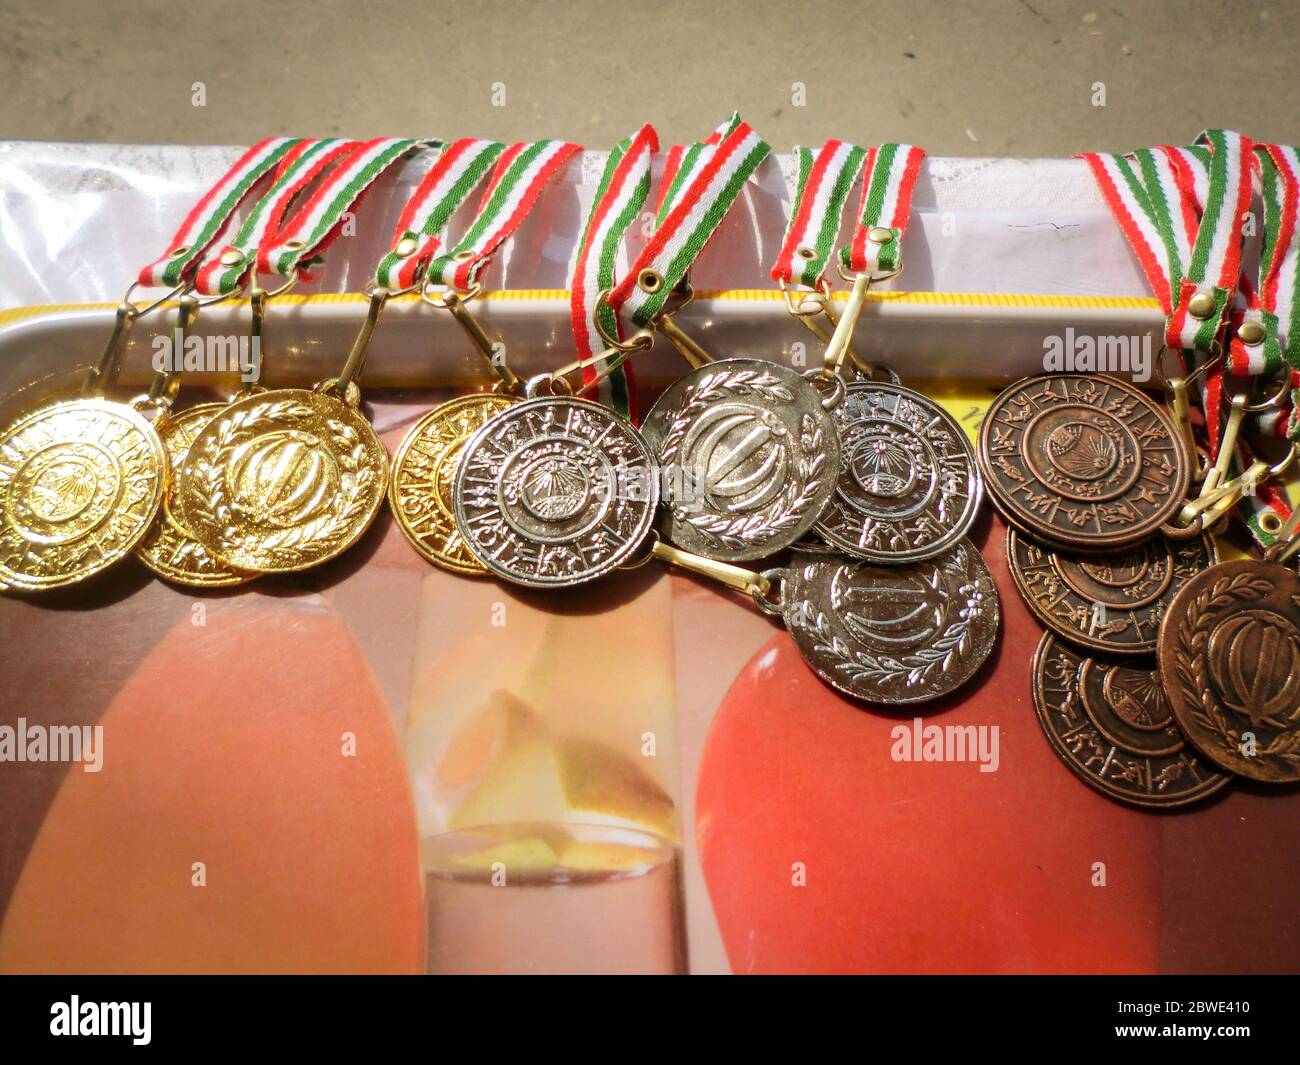 Médaille d'or, d'argent, de bronze avec ruban rouge, blanc et vert. Prix du gagnant. La traduction du texte sur les médailles est « république islamique d'iran. Banque D'Images